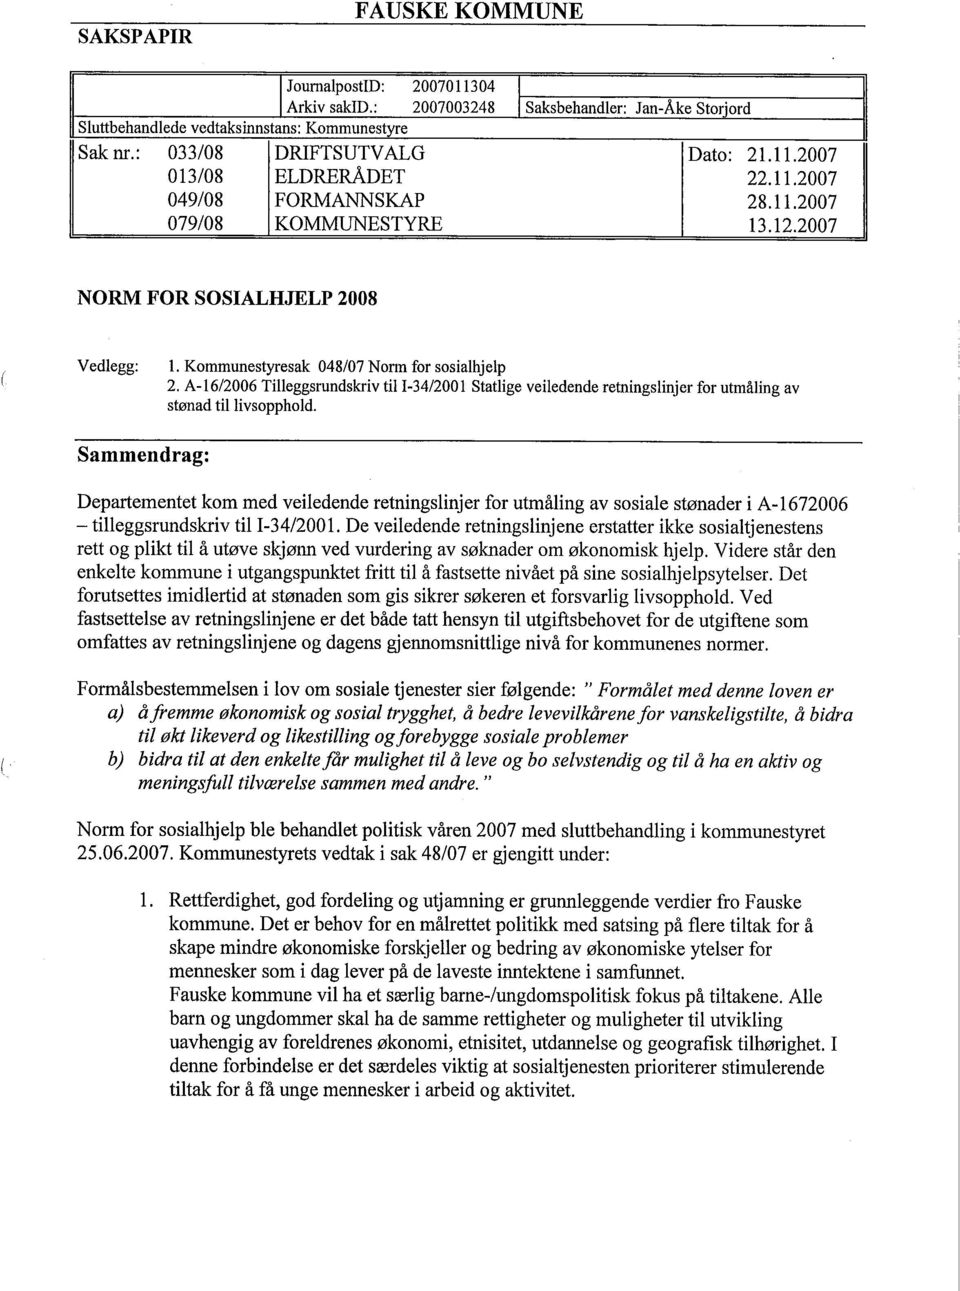 A-16/2006 Tileggsrundskriv til 1-34/2001 Statlge veiledende retningslinjer for utmåling av stønad tillivsopphold.